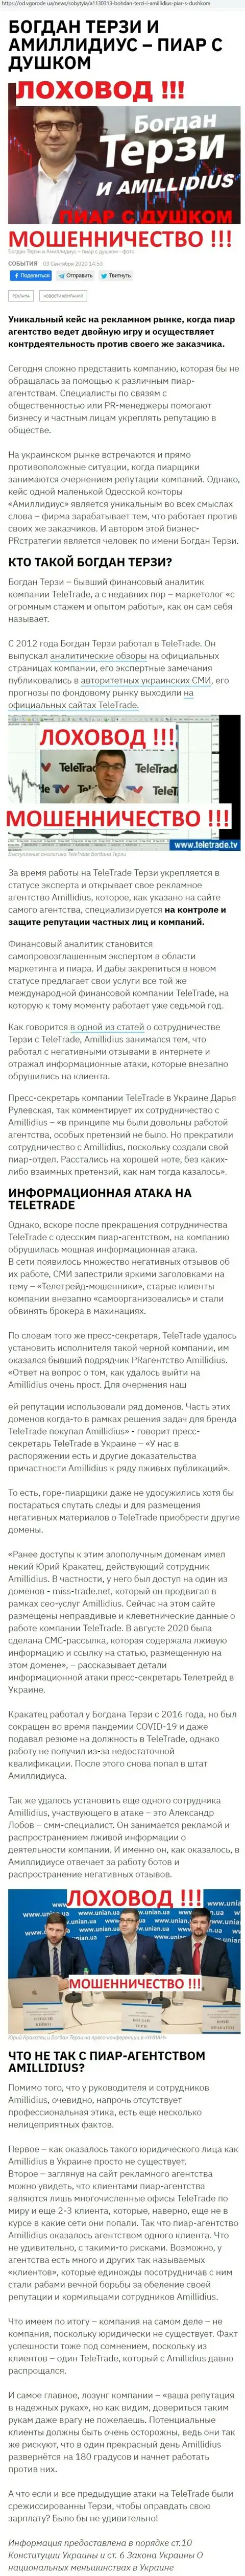 Богдан Терзи сомнительный партнер, информация со слов бывшего сотрудника пиар-фирмы Амиллидиус Ком